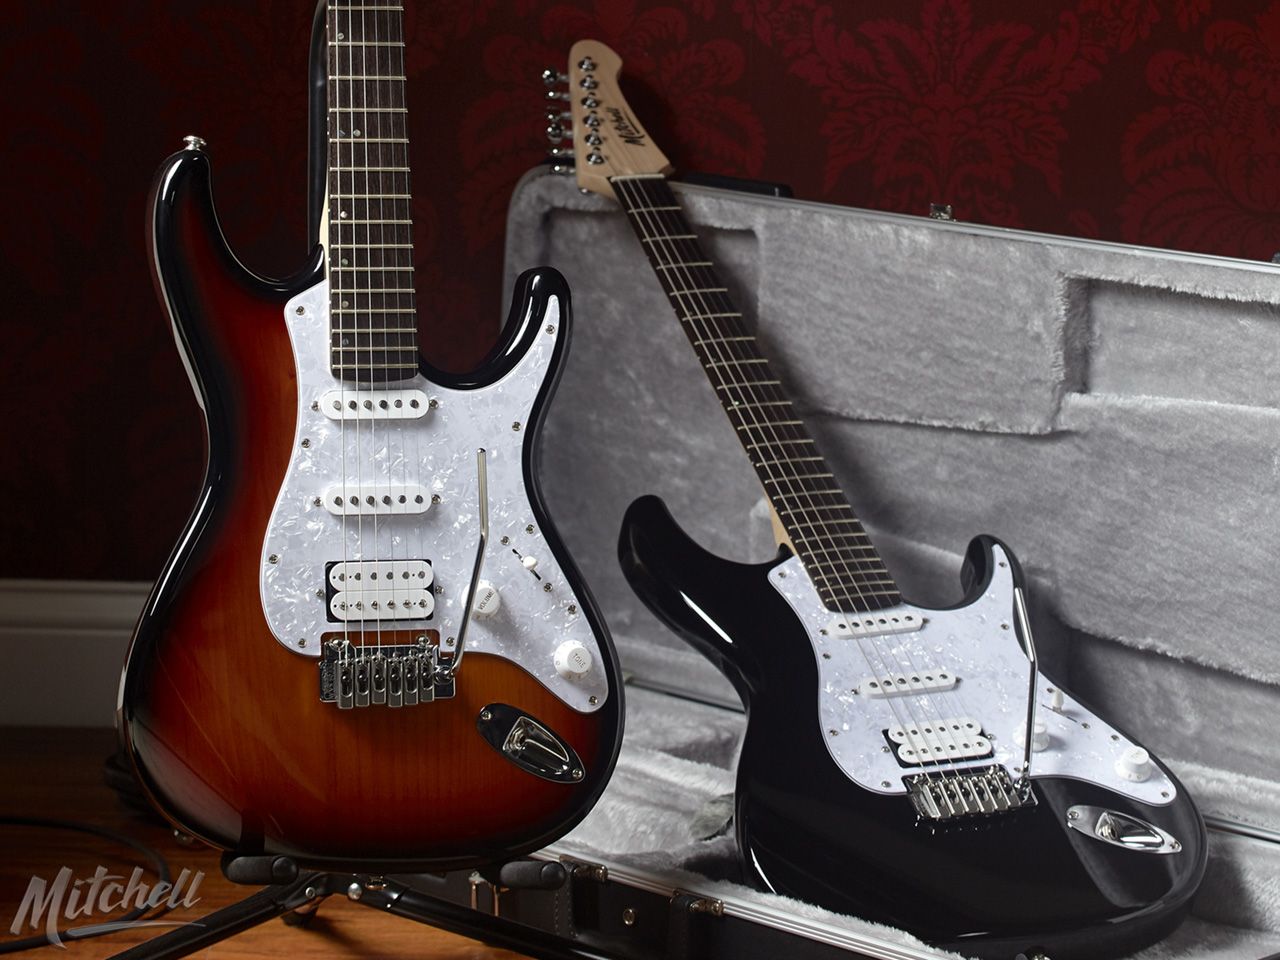 Mitchell Guitars Fondos de pantalla | Descargas gratuitas de Guitarras Eléctricas Mitchell